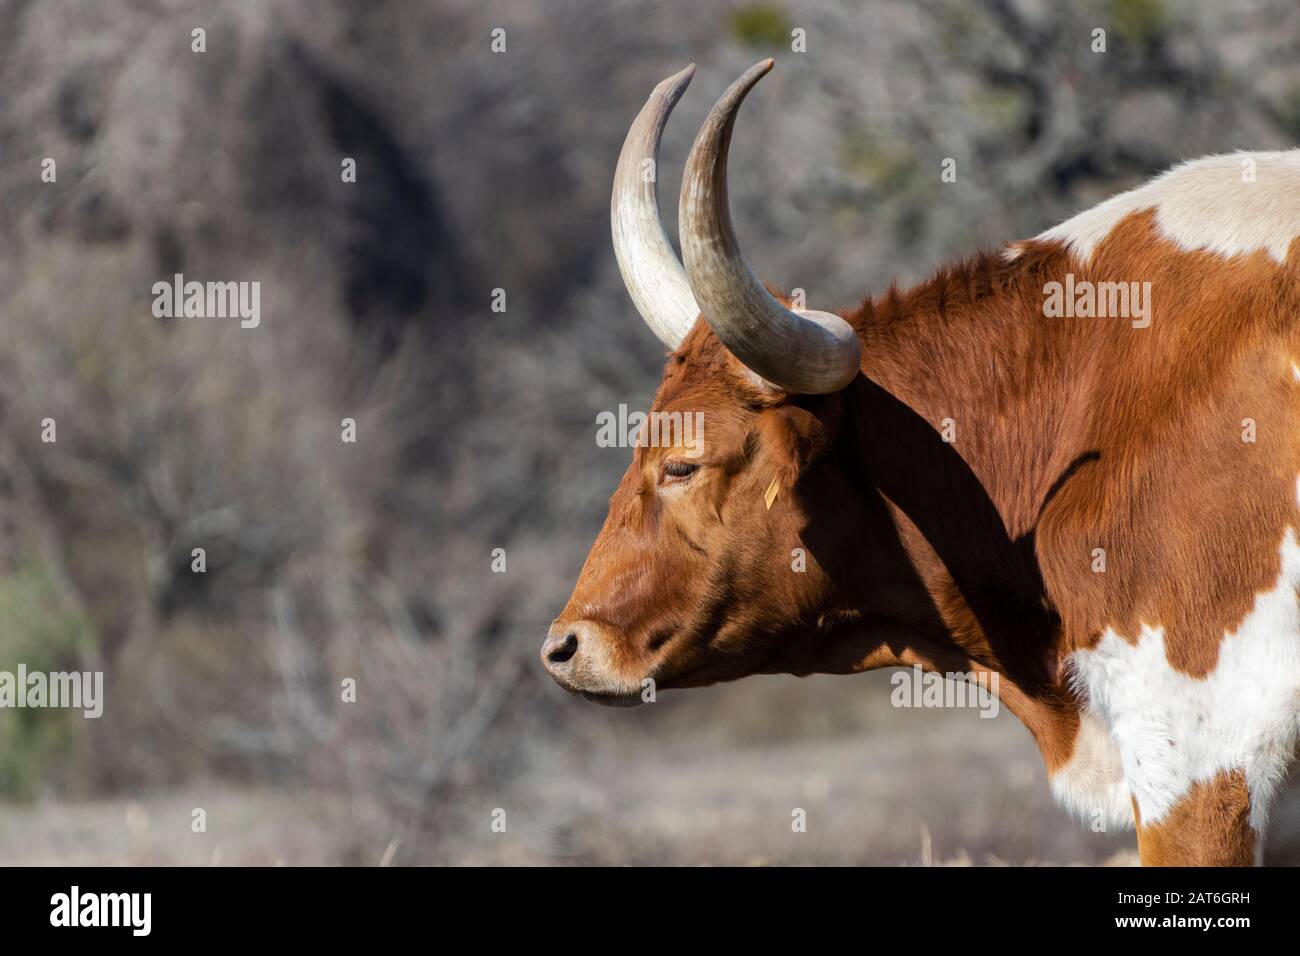 Profilo del toro immagini e fotografie stock ad alta risoluzione - Alamy